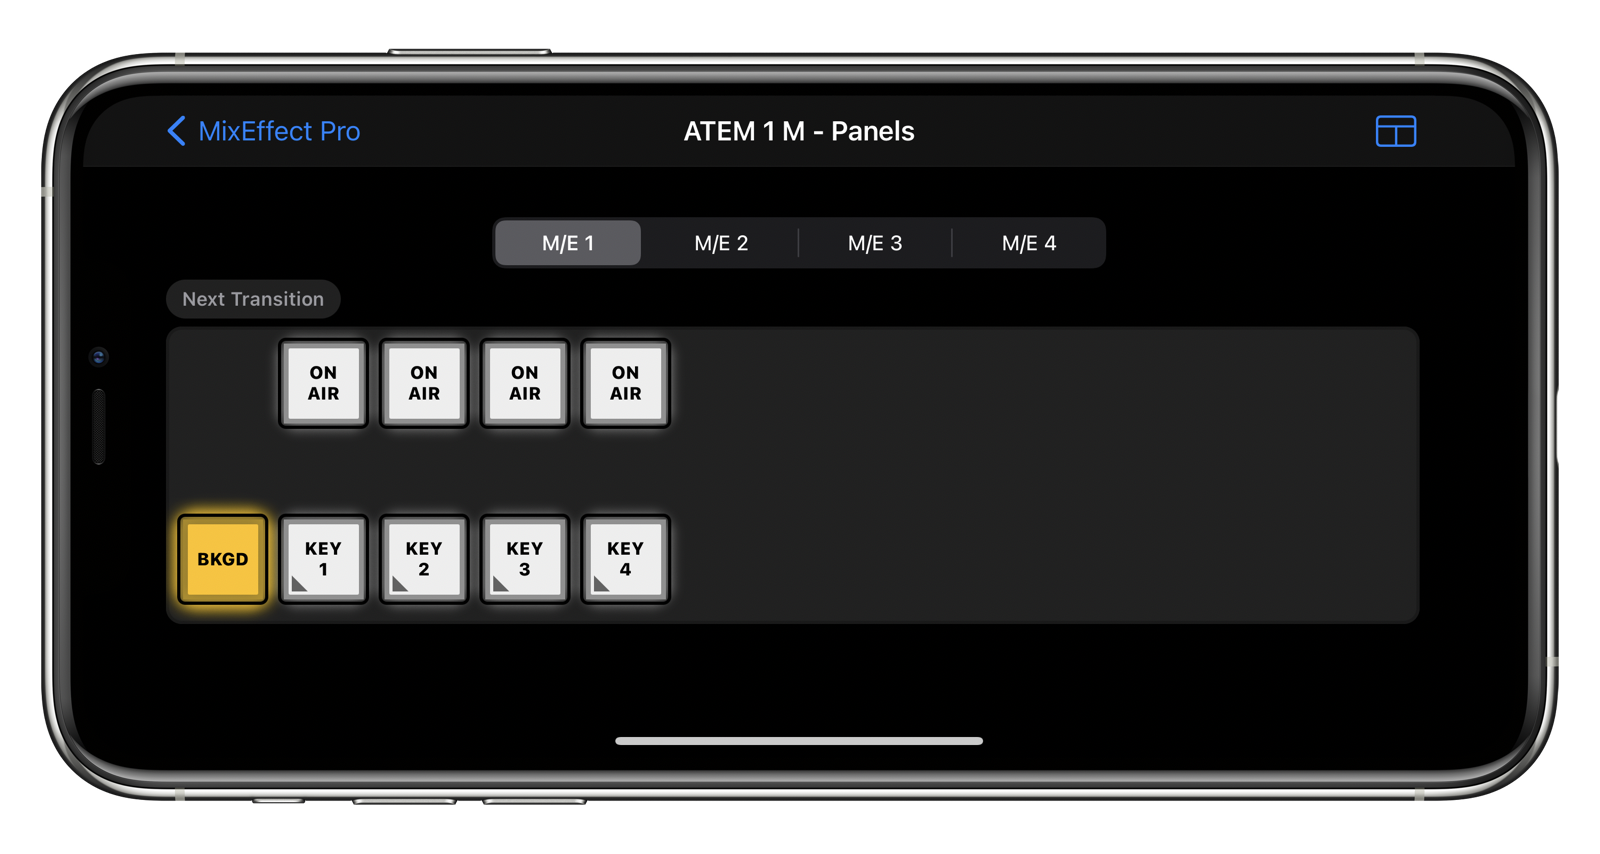 ATEM Mini Pro's Next Transition panel